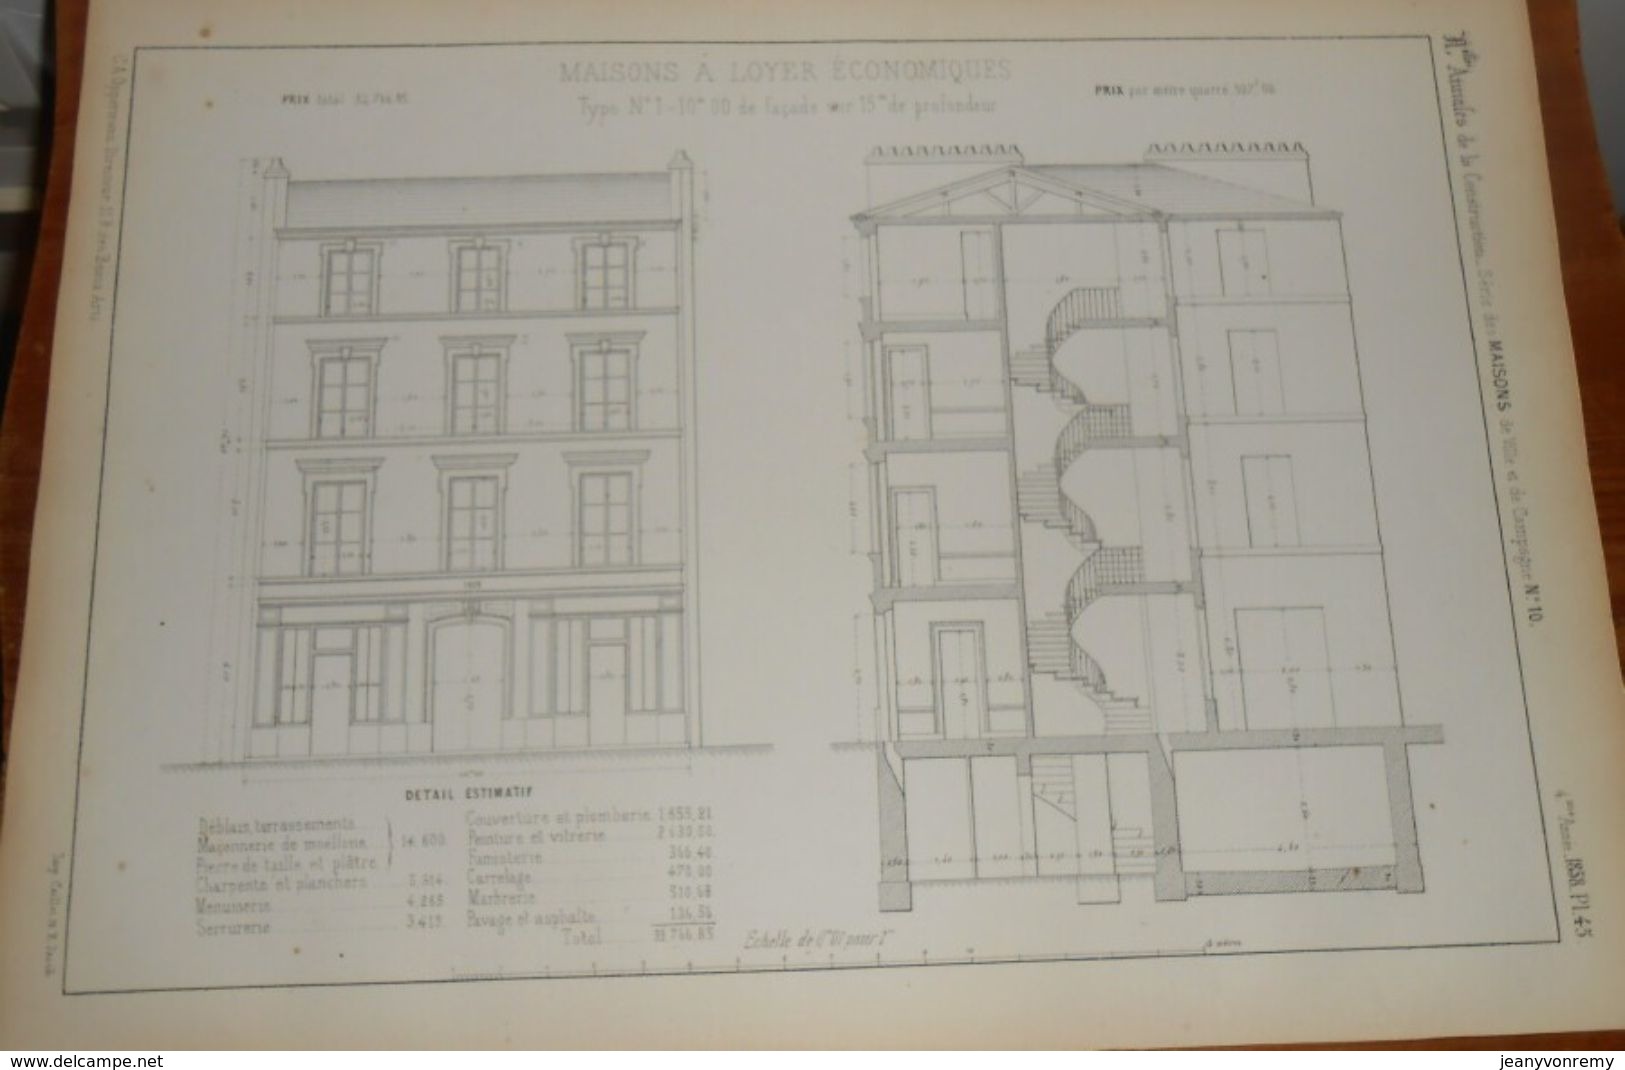 Plan De Maison à Loyer économique. 1858 - Public Works